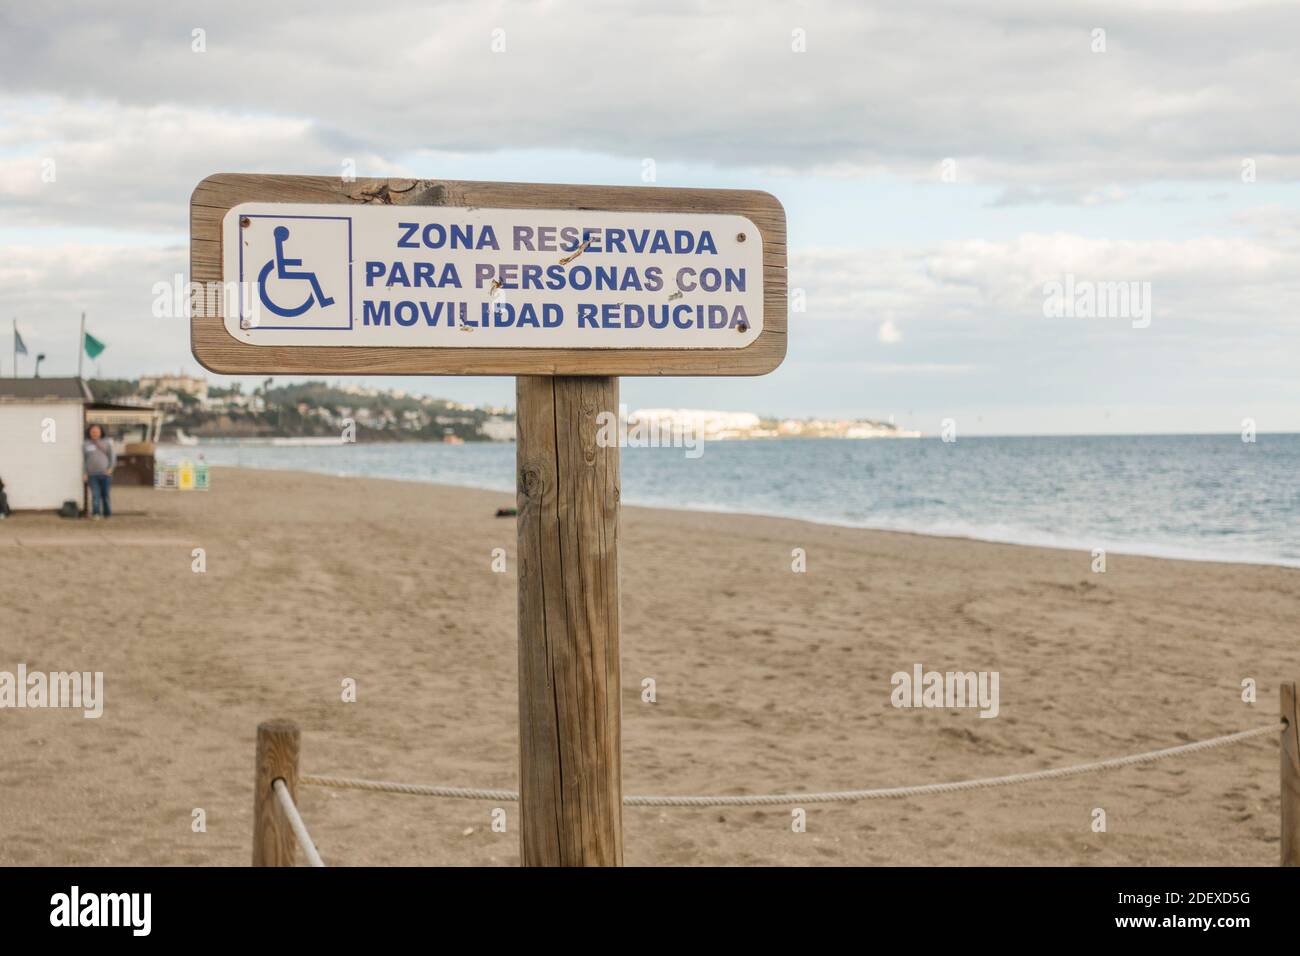 Zone de plage de signe réservée aux personnes handicapées sur la plage. Andalousie, Espagne. Banque D'Images